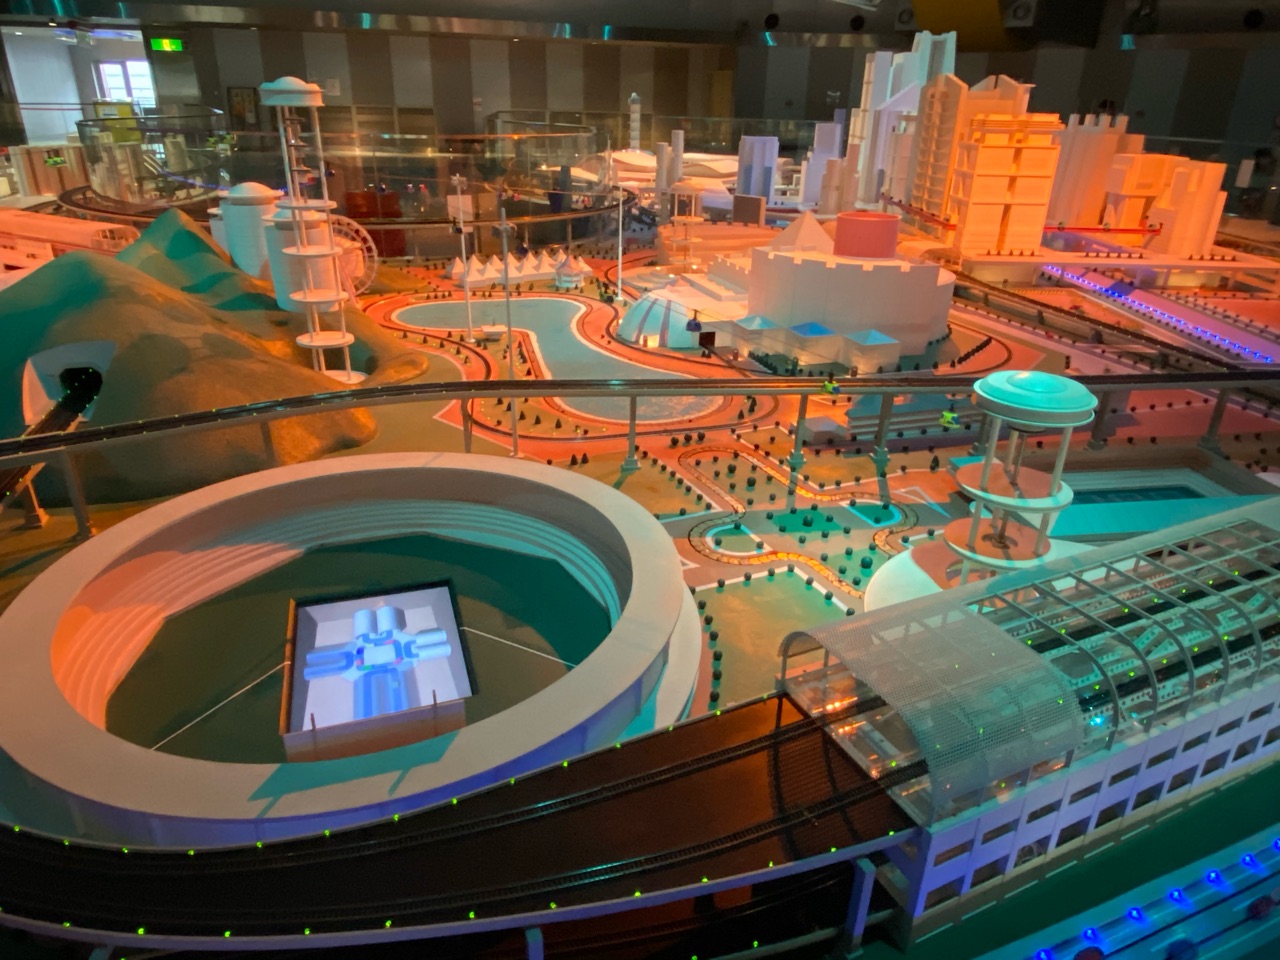 ヌマジ交通ミュージアム(広島市交通科学館)の超巨大パノラマ